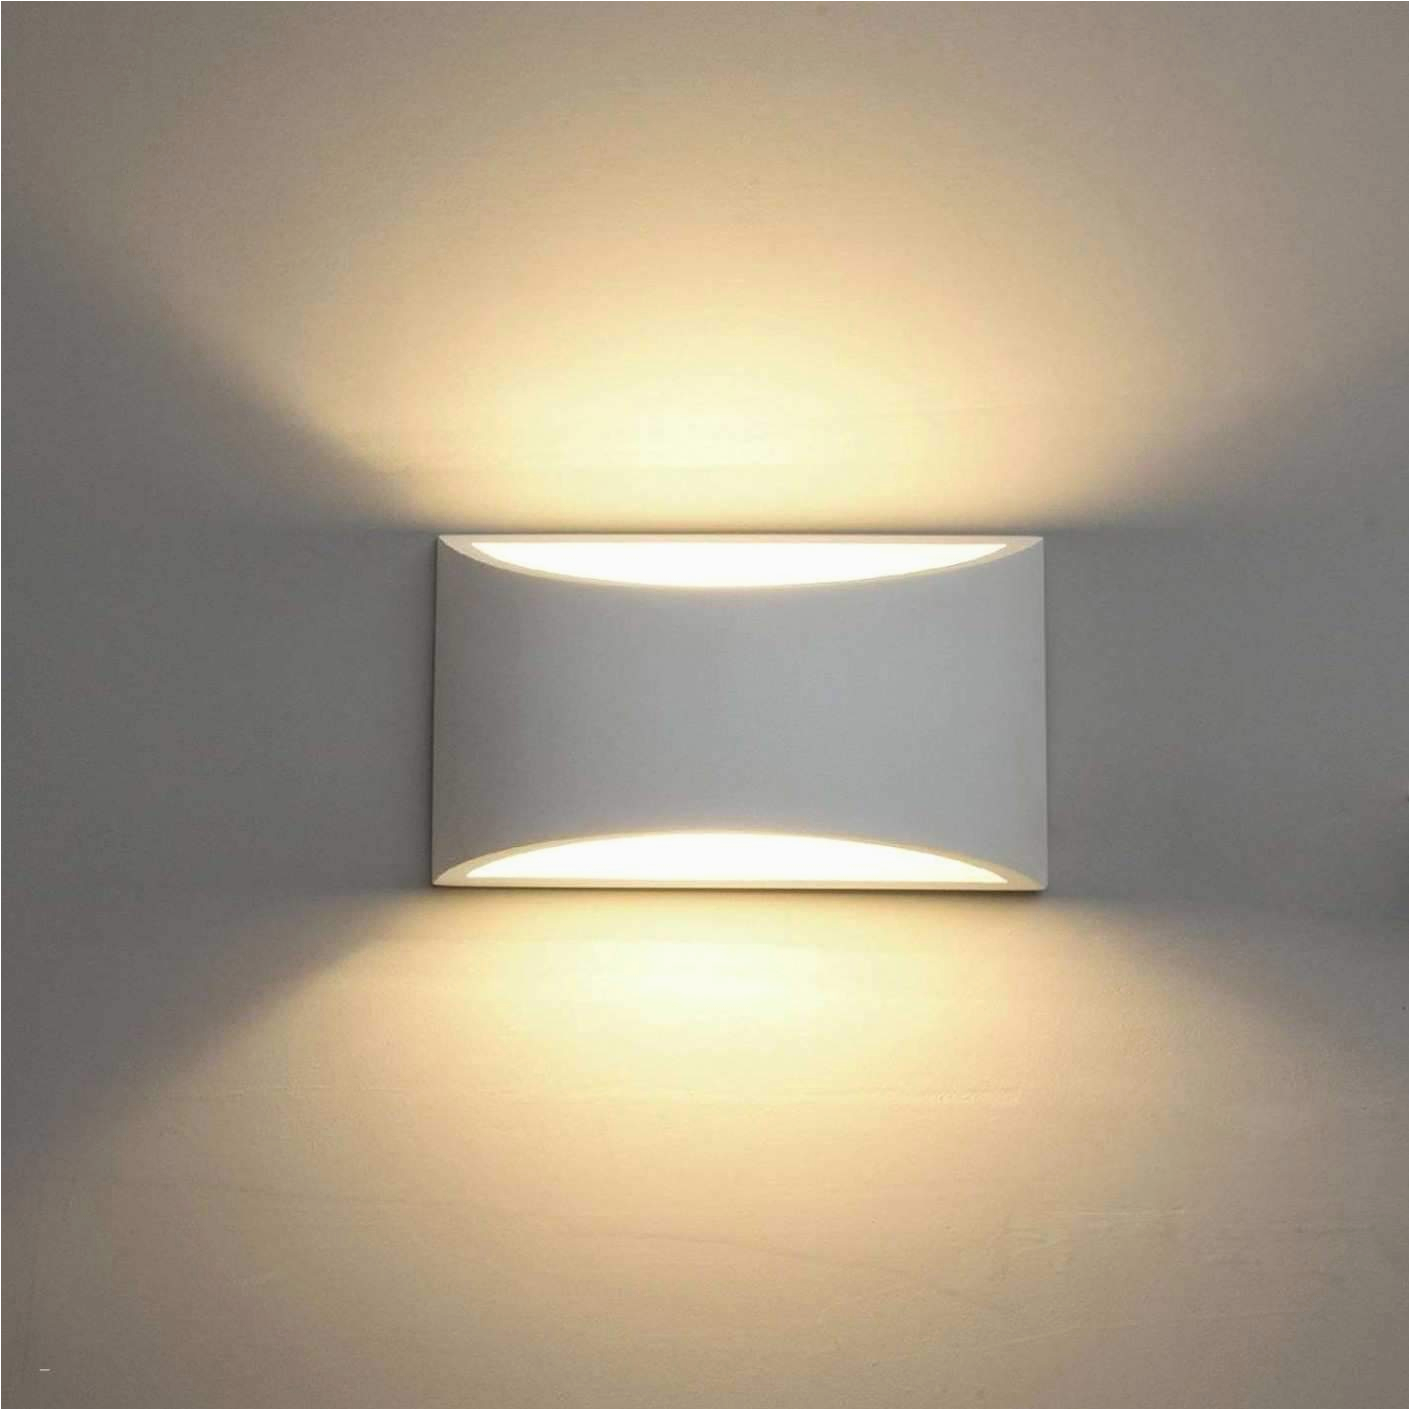 Led Lampen Schlafzimmer Ebay 34 Luxus Deckenlampe Wohnzimmer Led Elegant